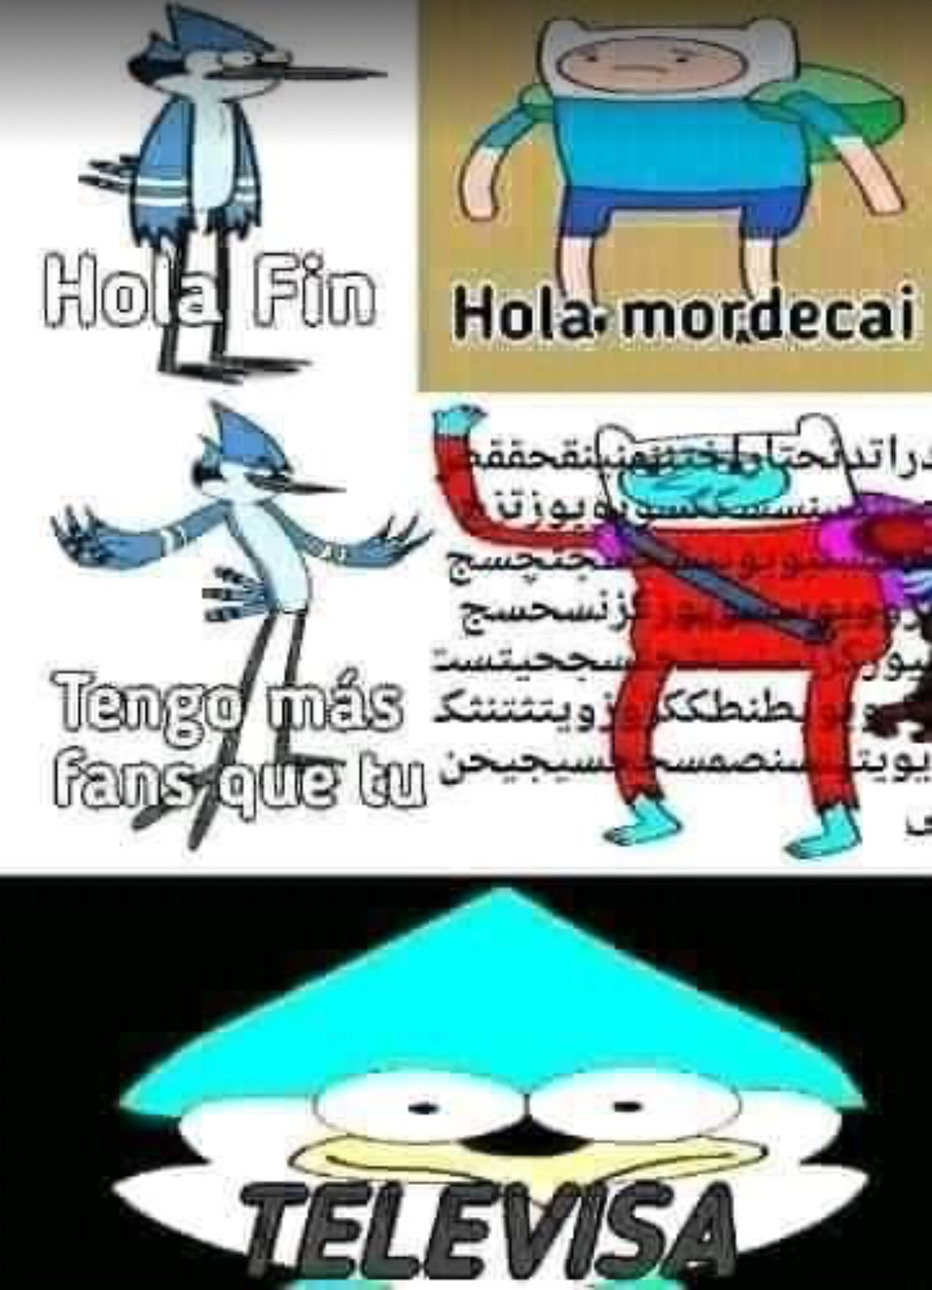 HOLA MORDECAI - meme